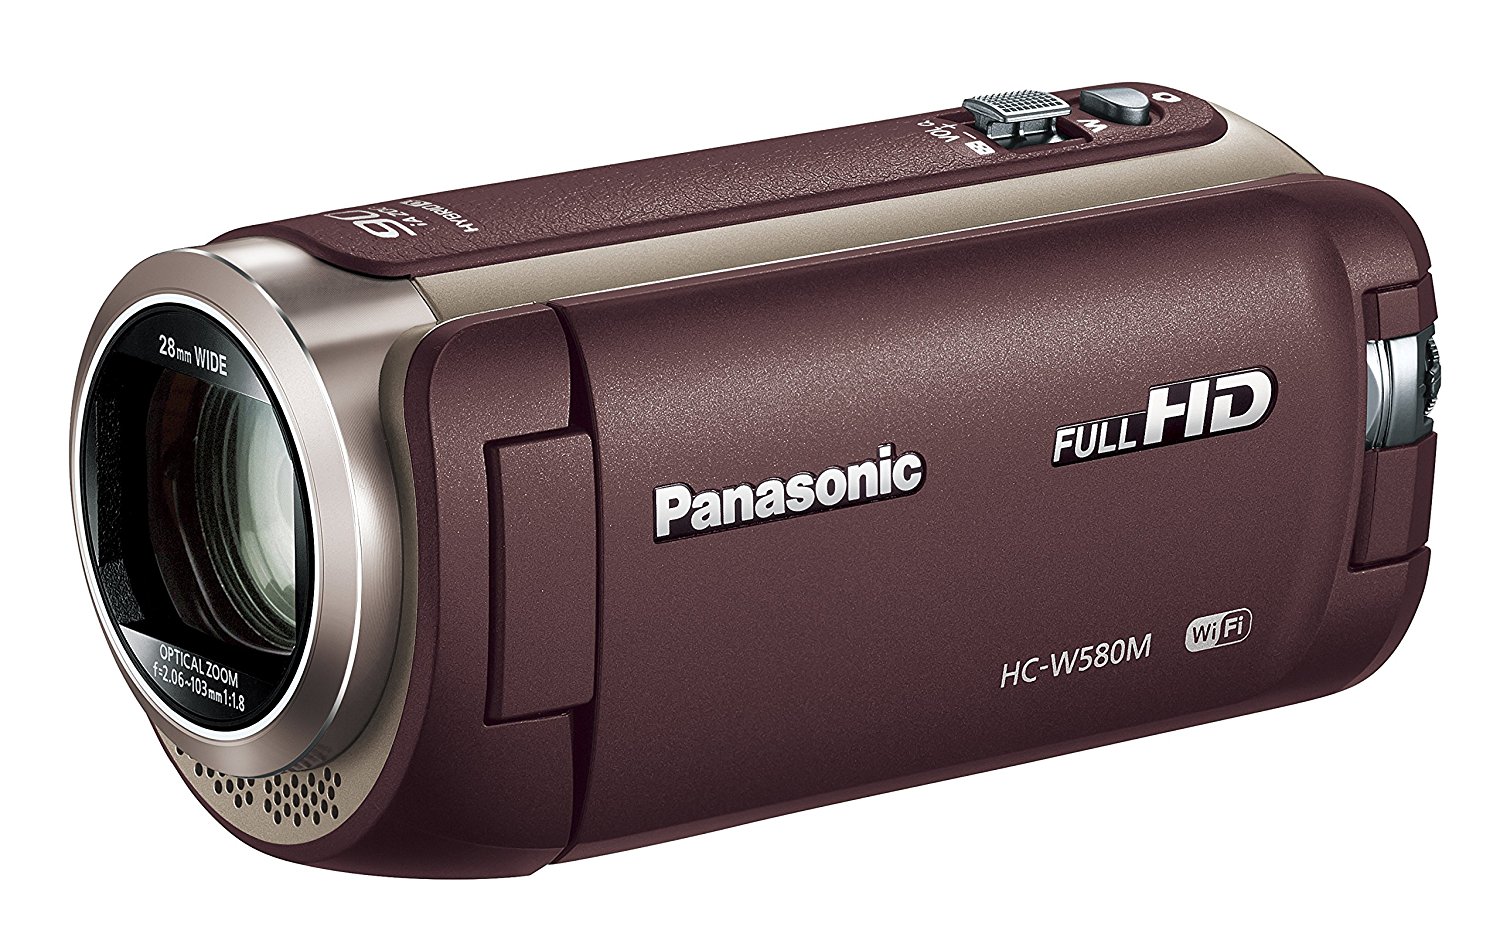 【楽天市場】ビデオカメラ レンタル 3泊4日 Panasonic パナソニック HC-W580M HDビデオカメラ ハンディーカム ハイビジョン ワイプ撮り カメラ フルハイビジョン 高倍率